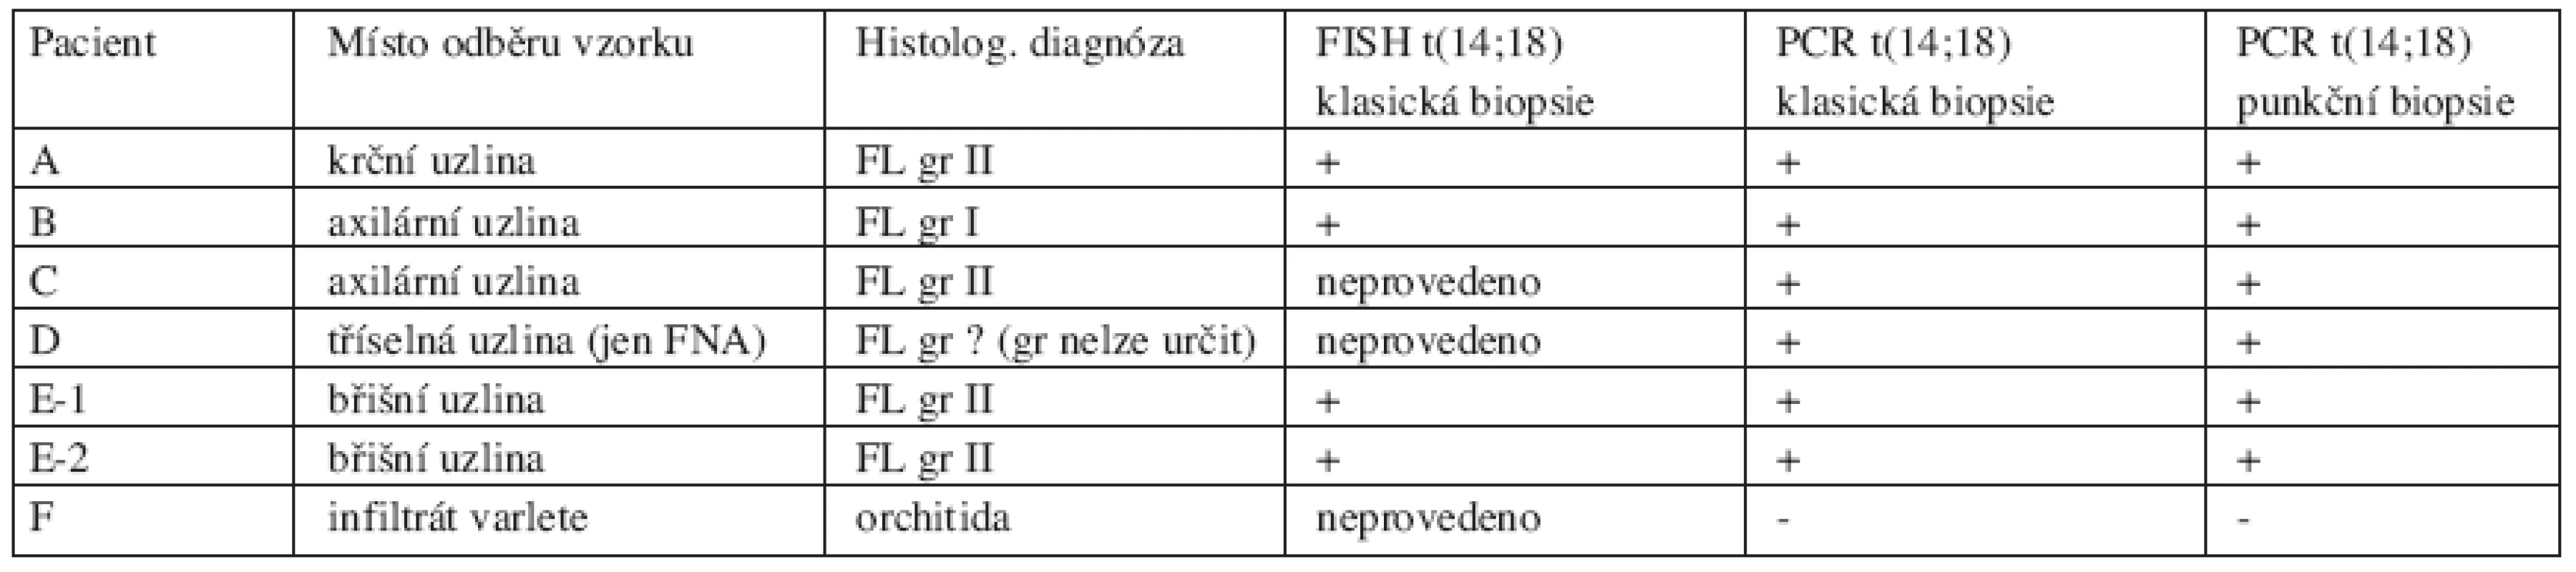 Průkaz t(14;18) a srovnání vzorků uzlin získaných klasickou biopsií a punkční biopsií (FNA) pod kontrolou ultrazvuku.